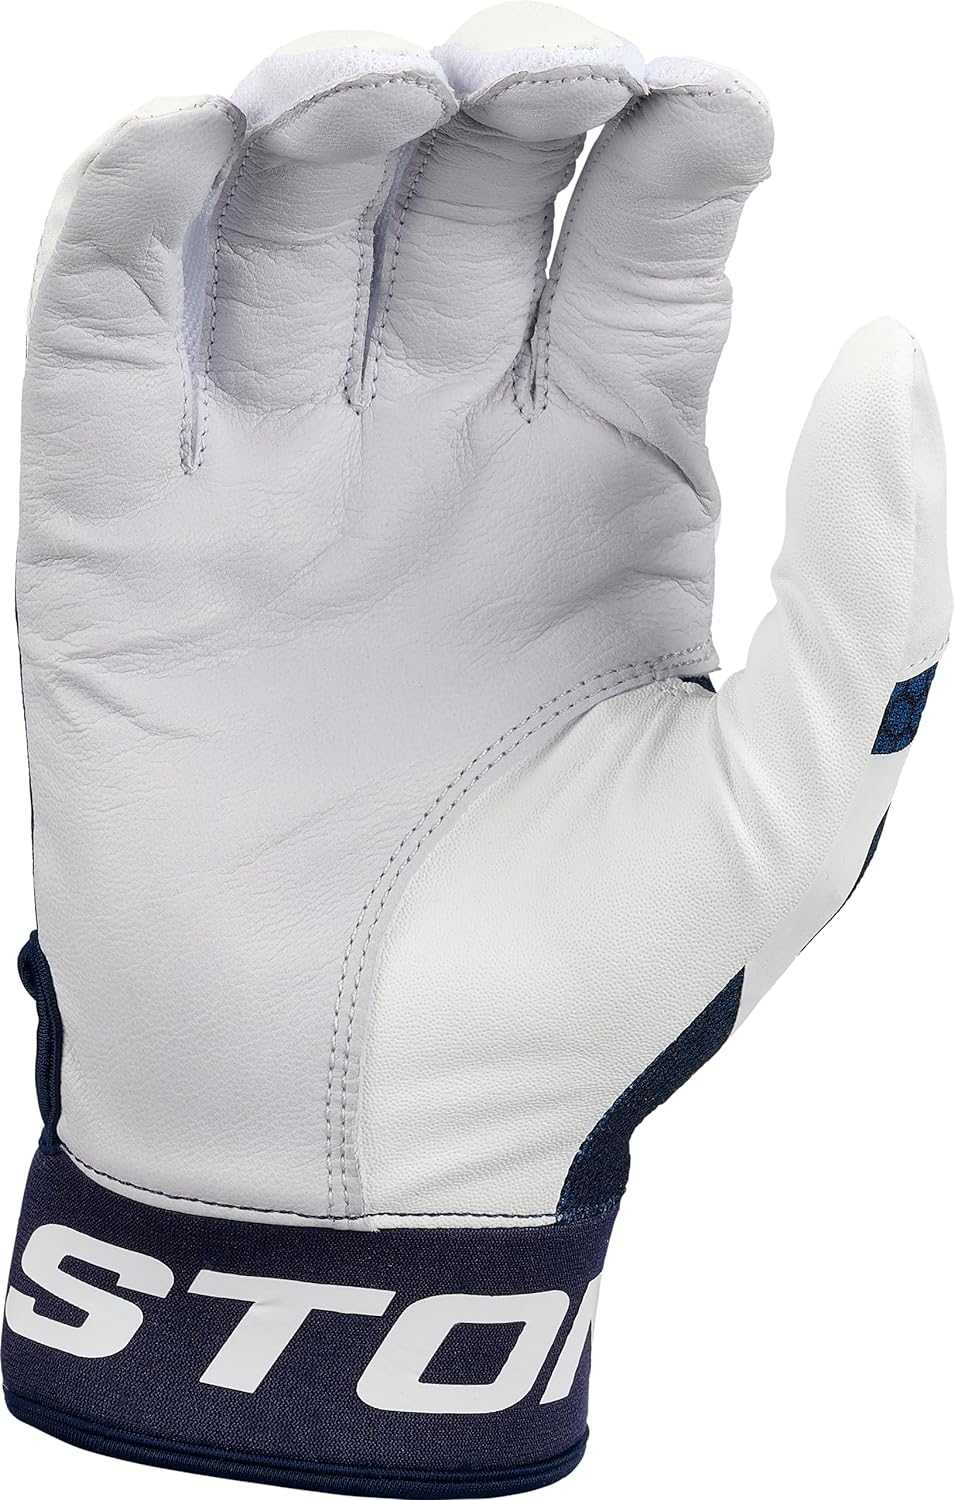 Easton MAV GT Batting Gloves - White Navy - HIT a Double